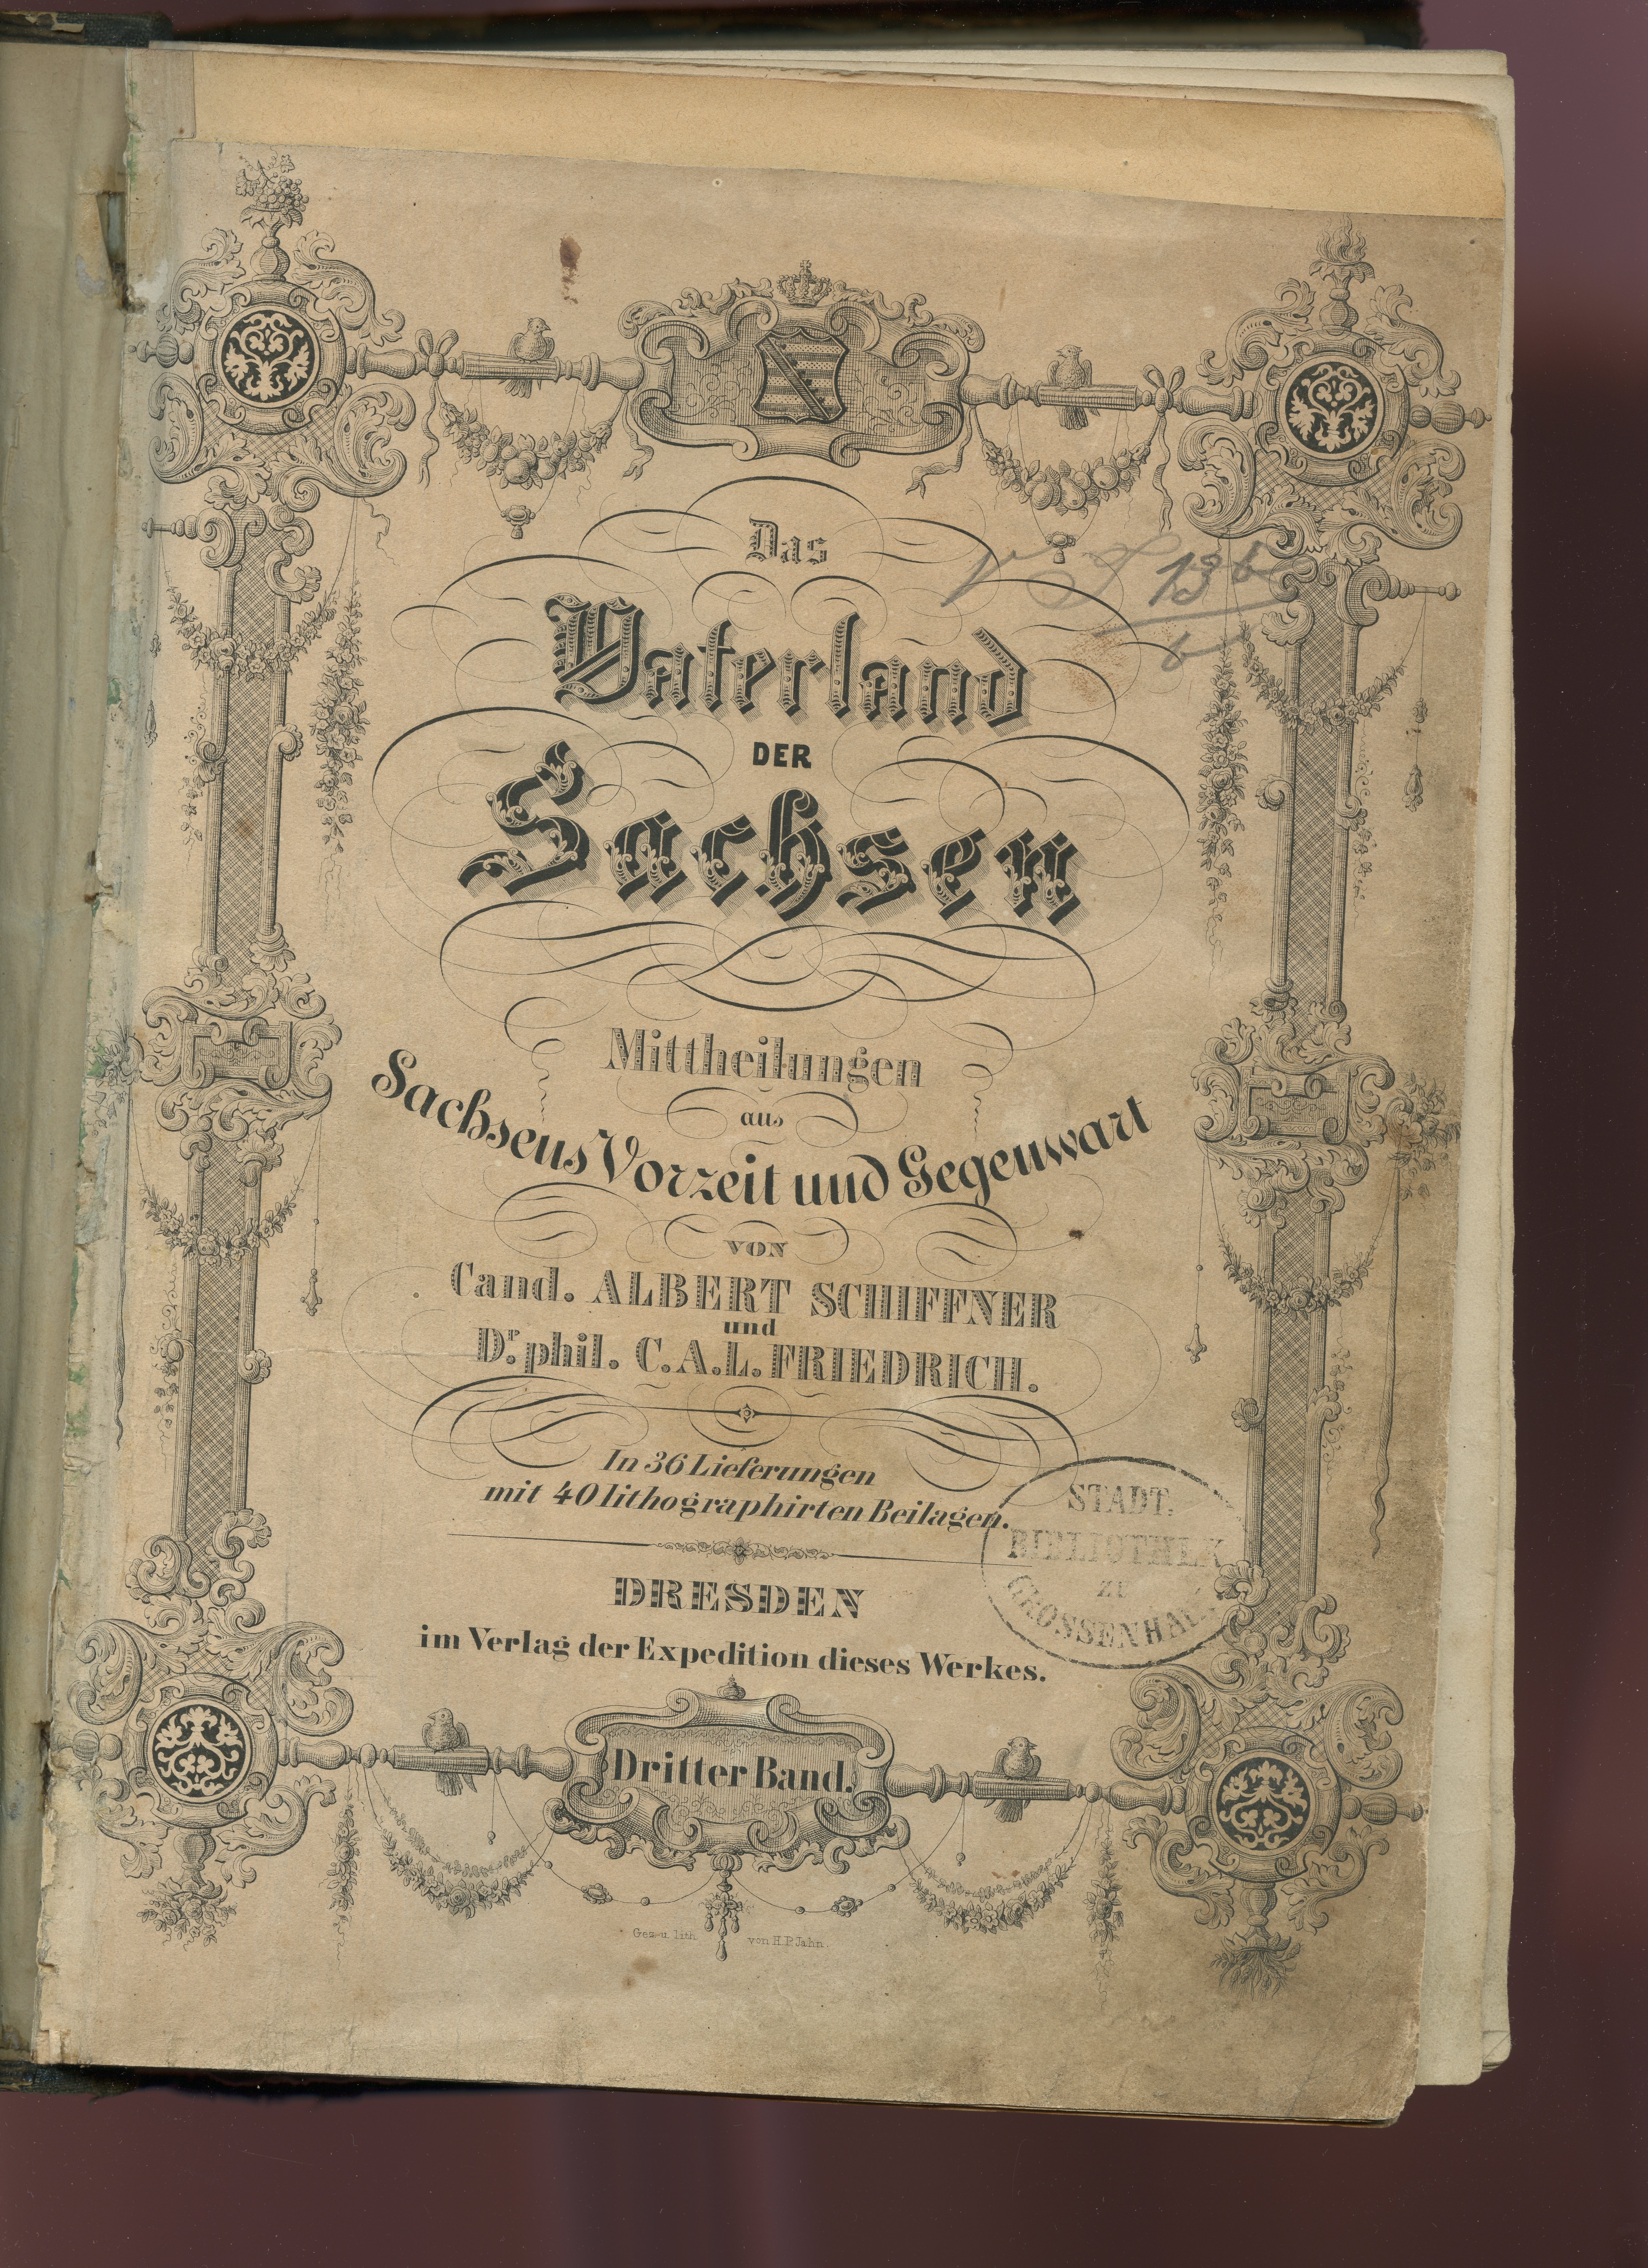 Schiffner, Albert / Friedrich, C.A.L.: Das Vaterland der Sachsen [...] Bd. 3, 1839? (Museum Alte Lateinschule CC BY-NC-SA)